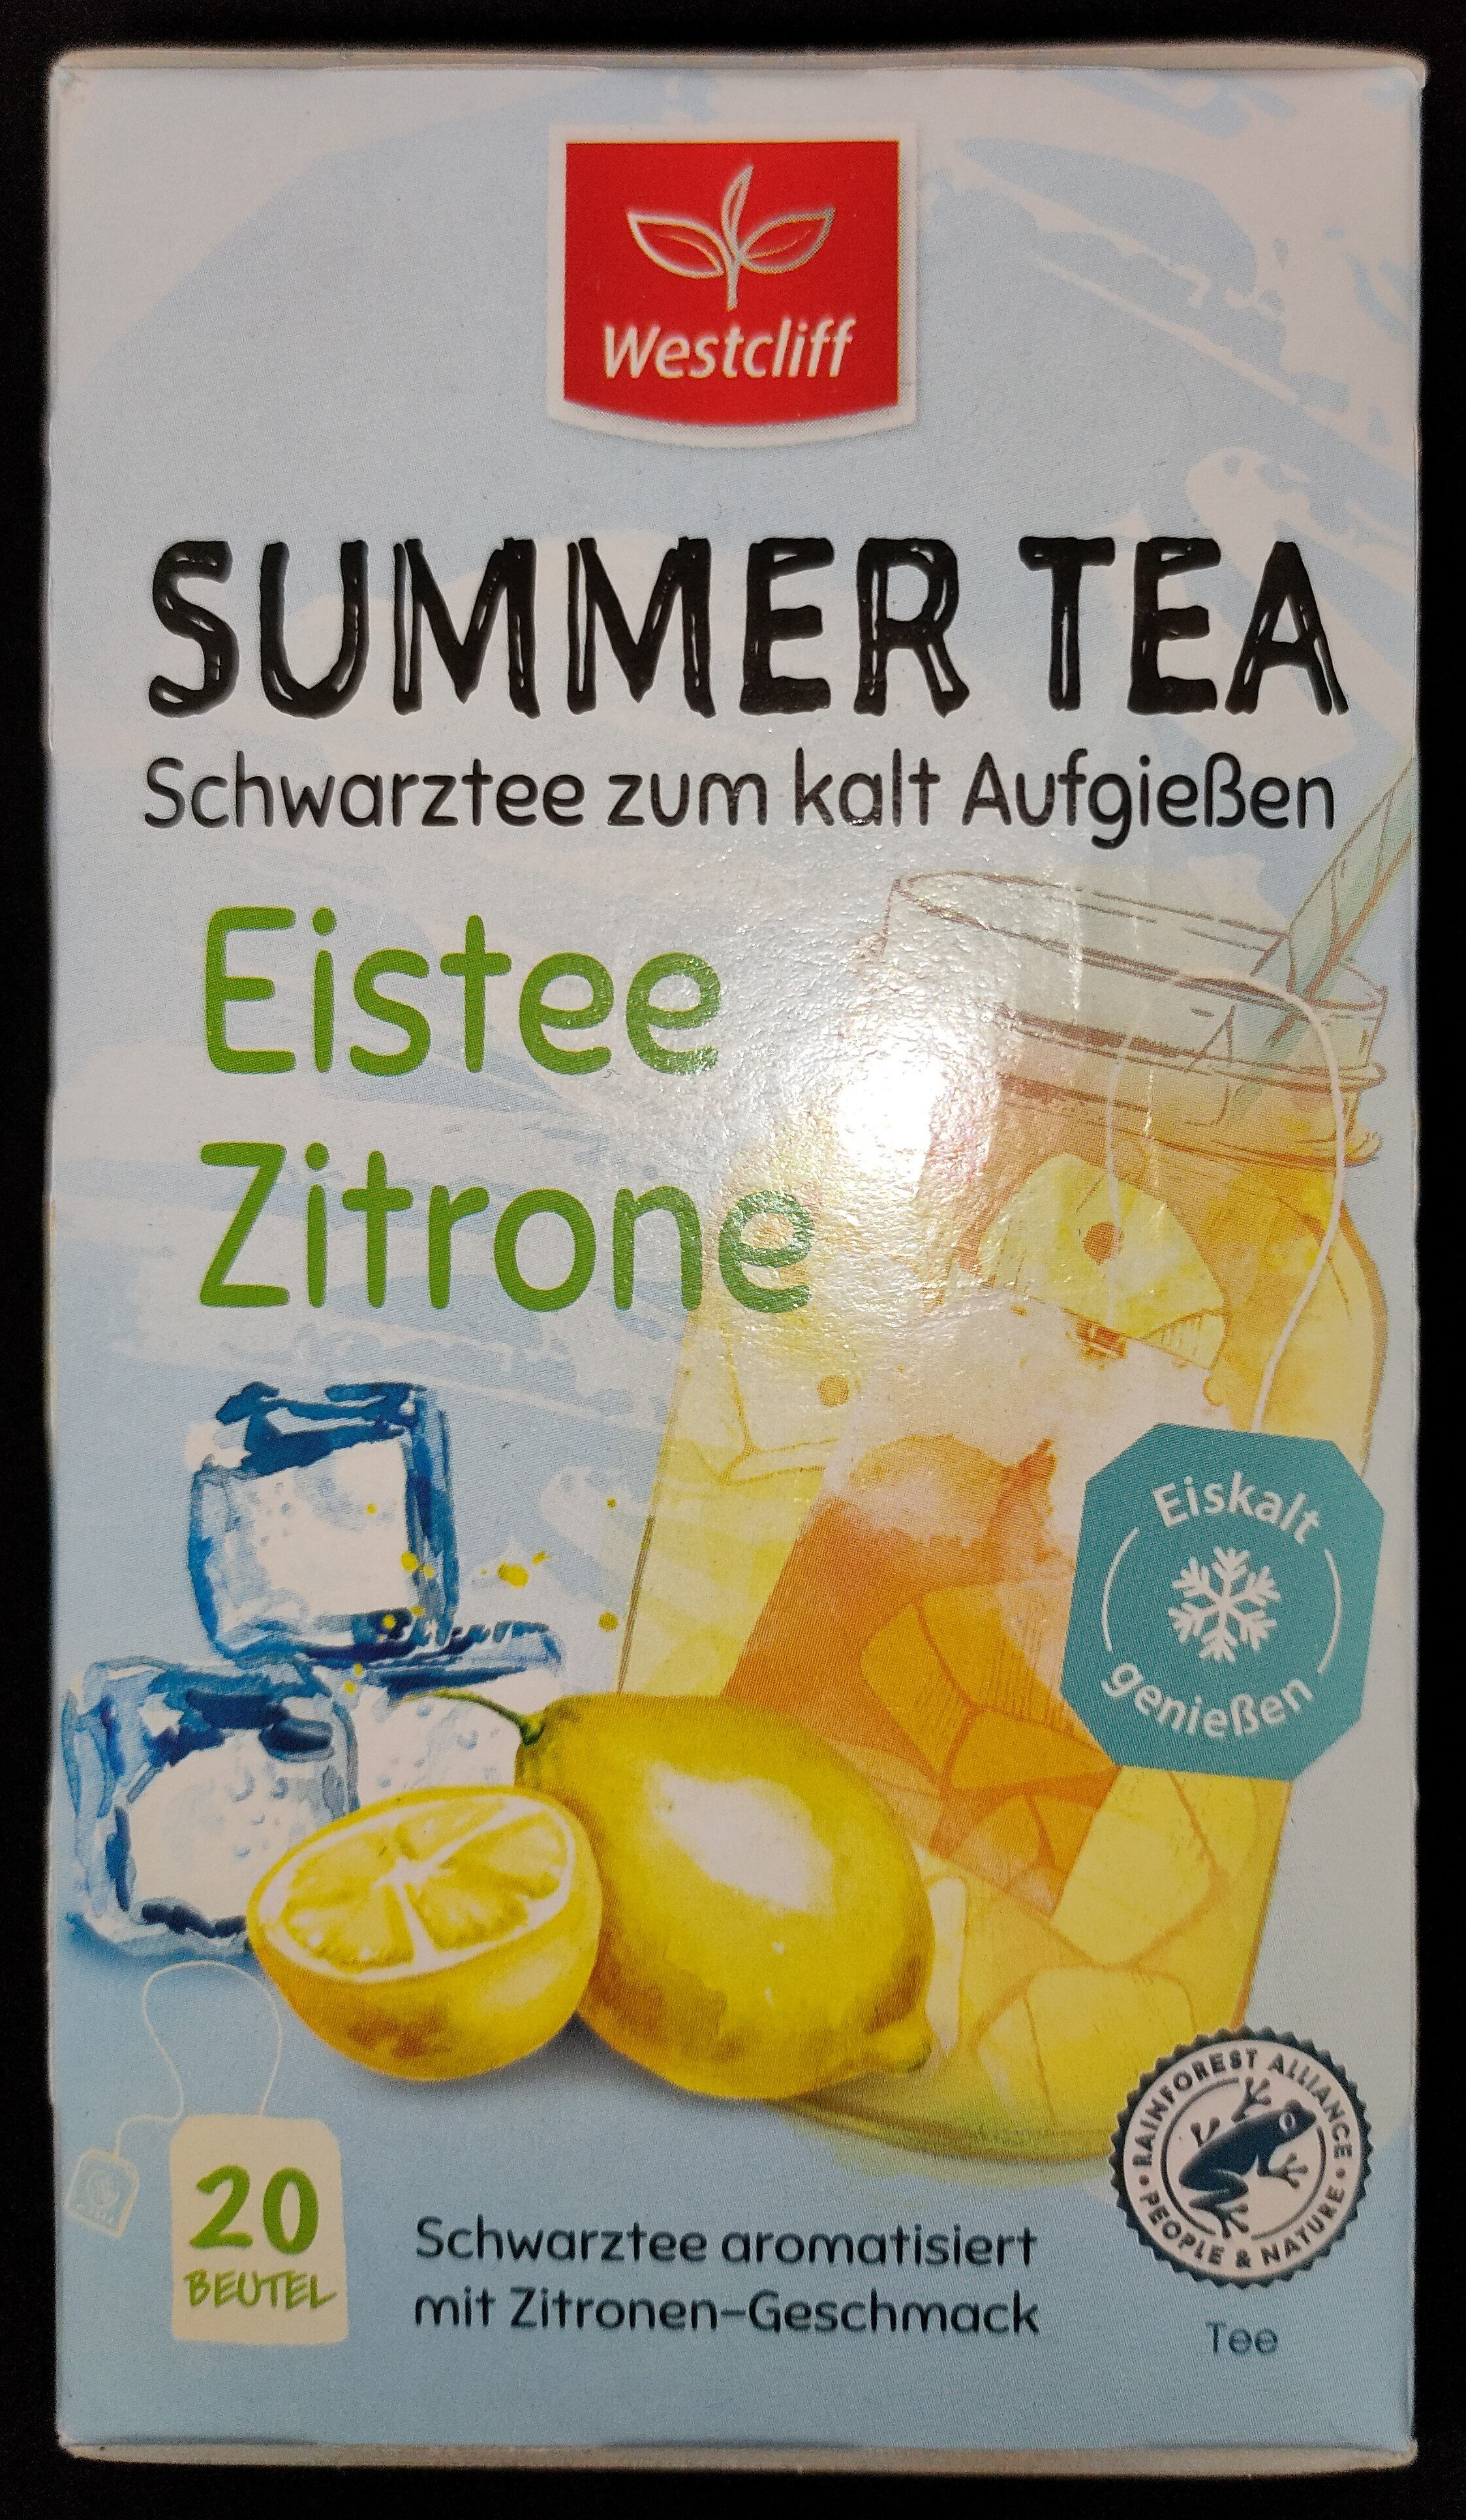 Summer Tea - Eistee Zitrone - Product - de